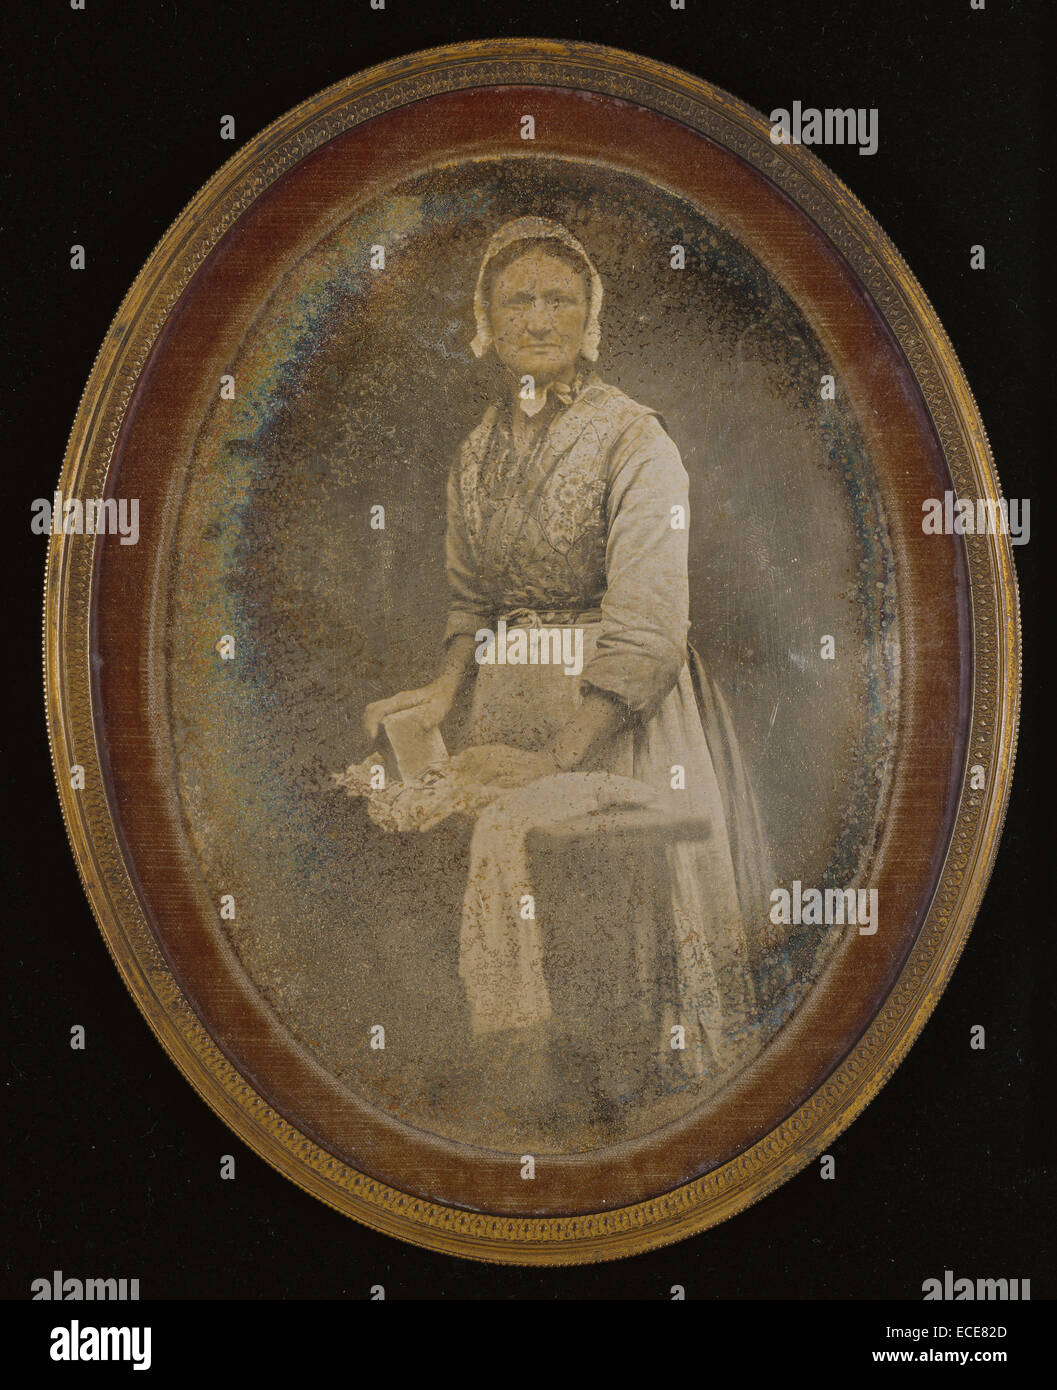 Retrato de una lavandera; desconocido, creador francés; 1848 - 1850; daguerrotipo, mano de color; imagen: 13,5 x 10 cm (5 x 3 5/16 15/16 in.), la placa (crudamente toda cortada, placa en forma oval): 15,7 x 11,9 cm (6 3/16 x 4 11/16). Foto de stock